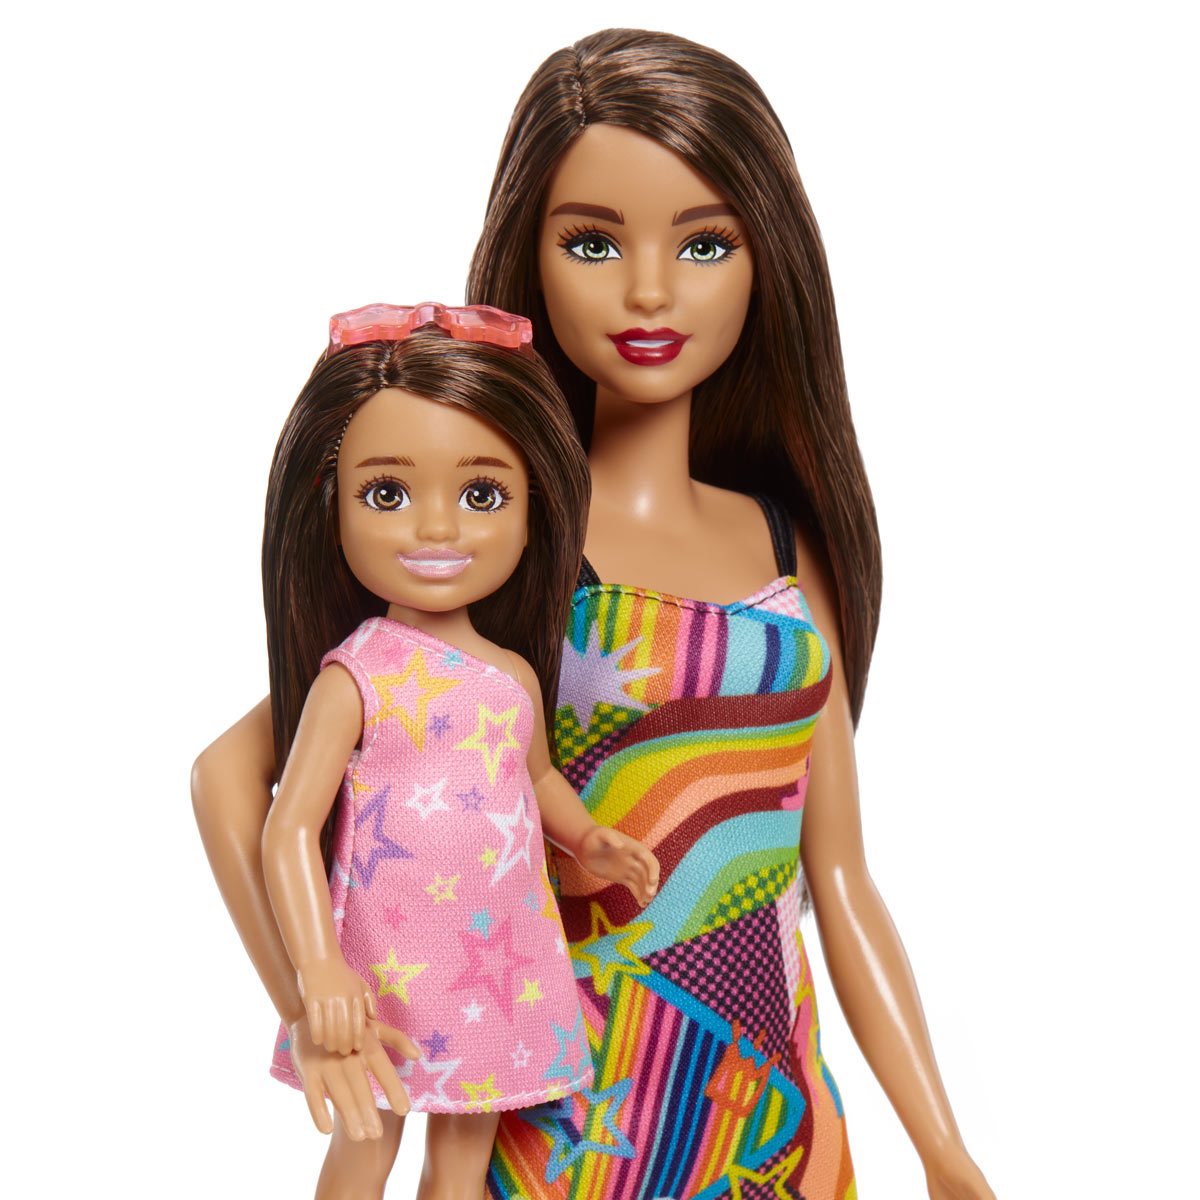 Barbie Popstar Sisters